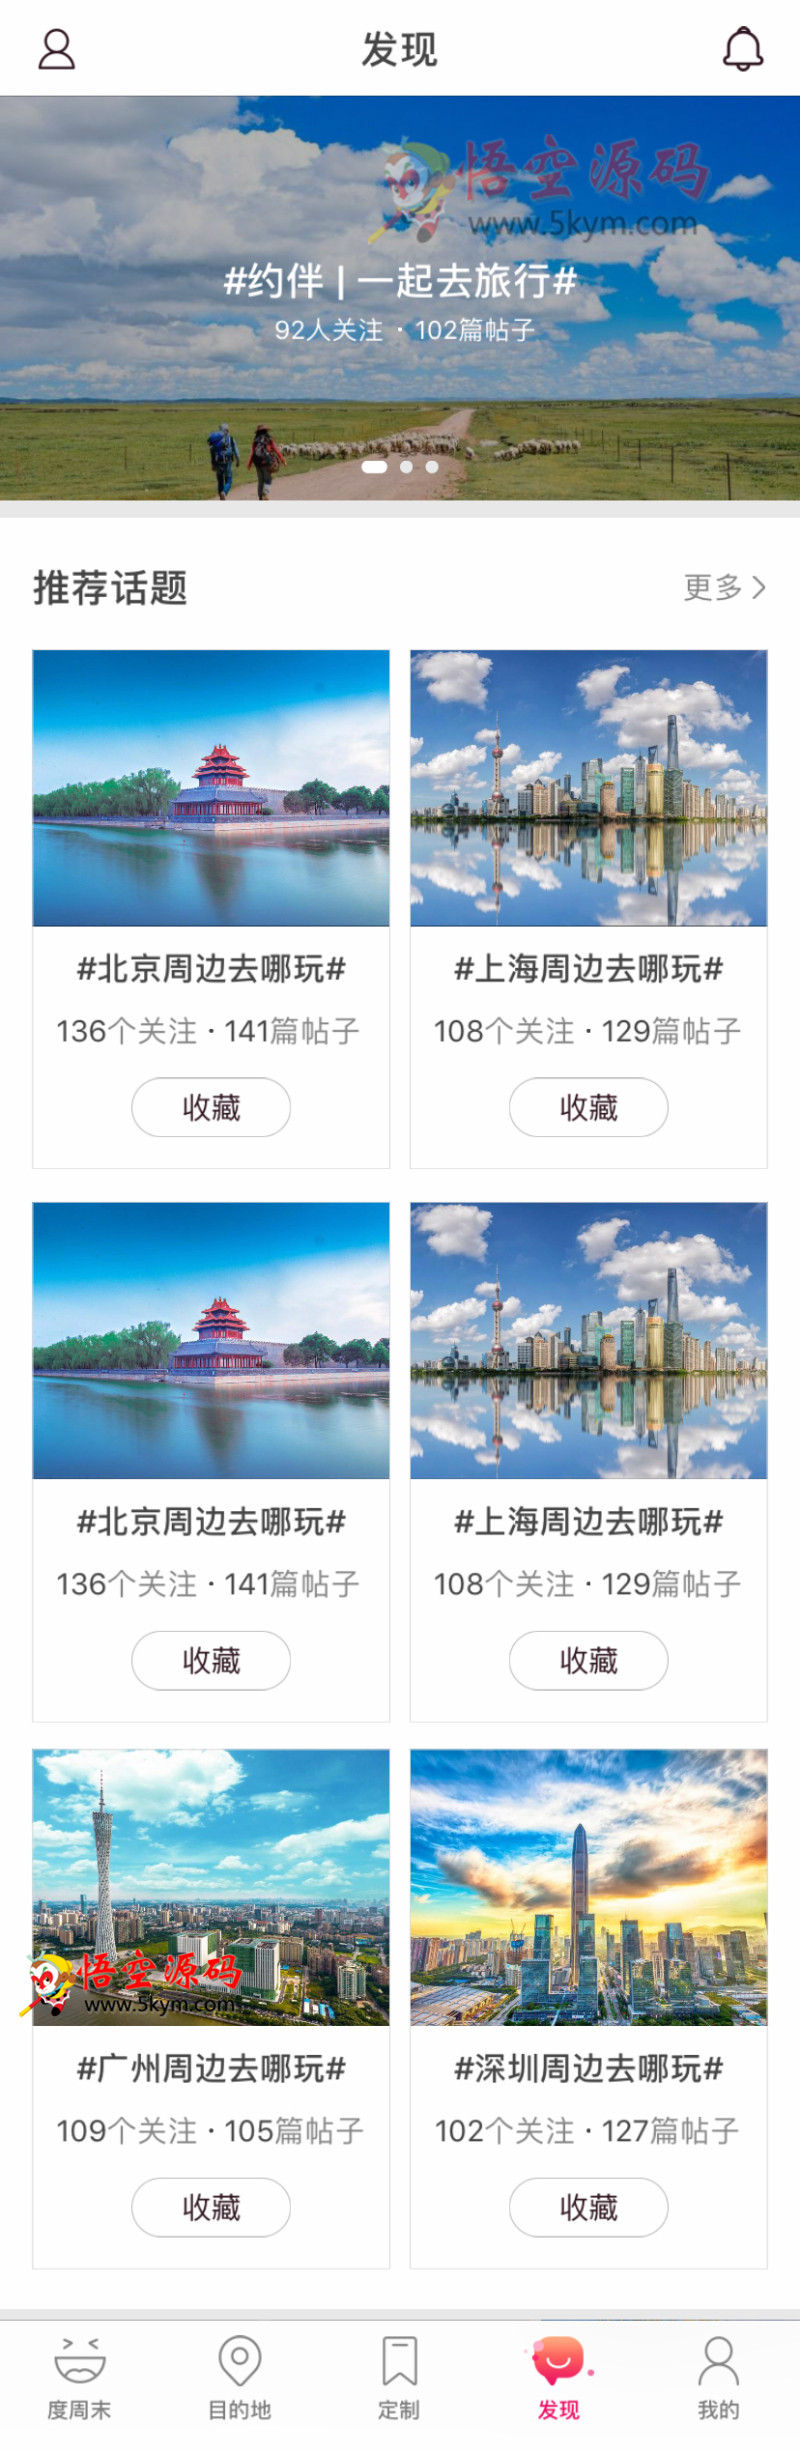 手机旅游app发现页面模板  html5网站源码下载 DIV+CSS代码下载